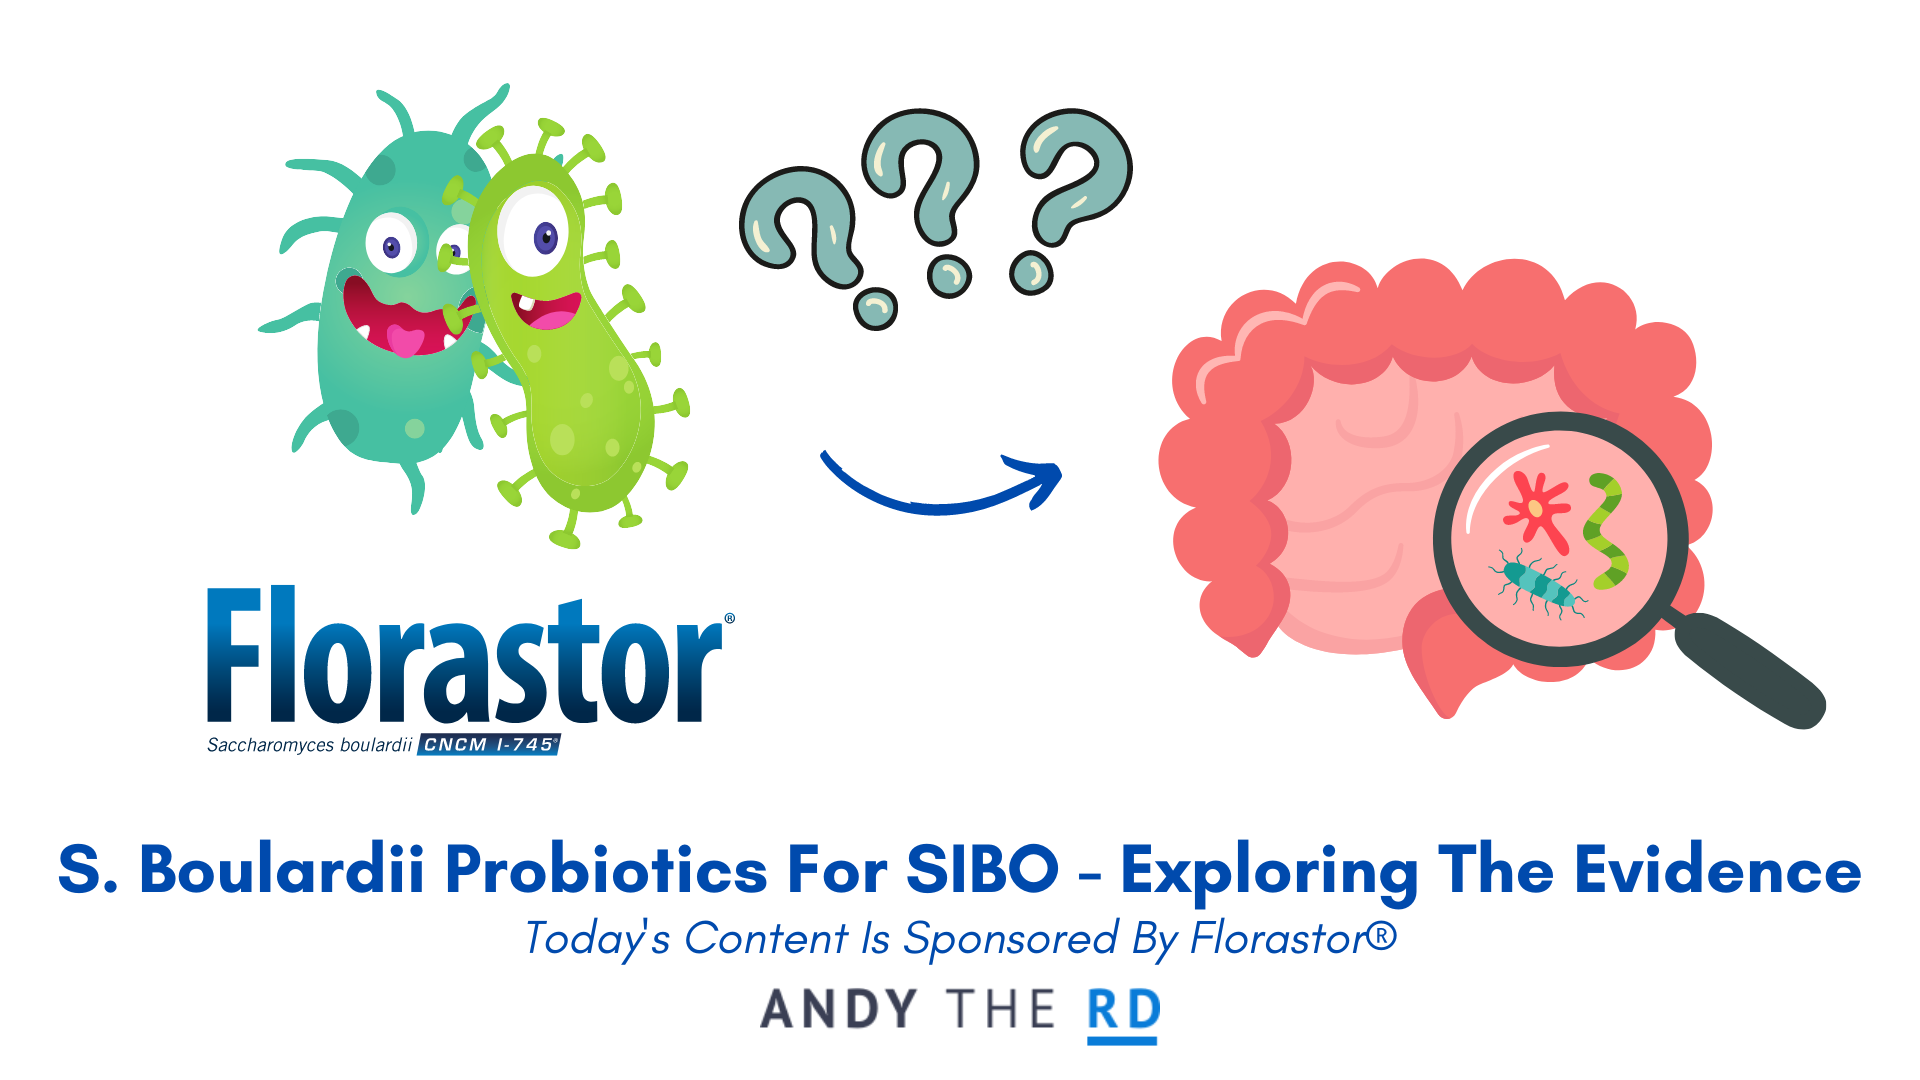 S. Boulardii Probiotics For SIBO – Do They Help?